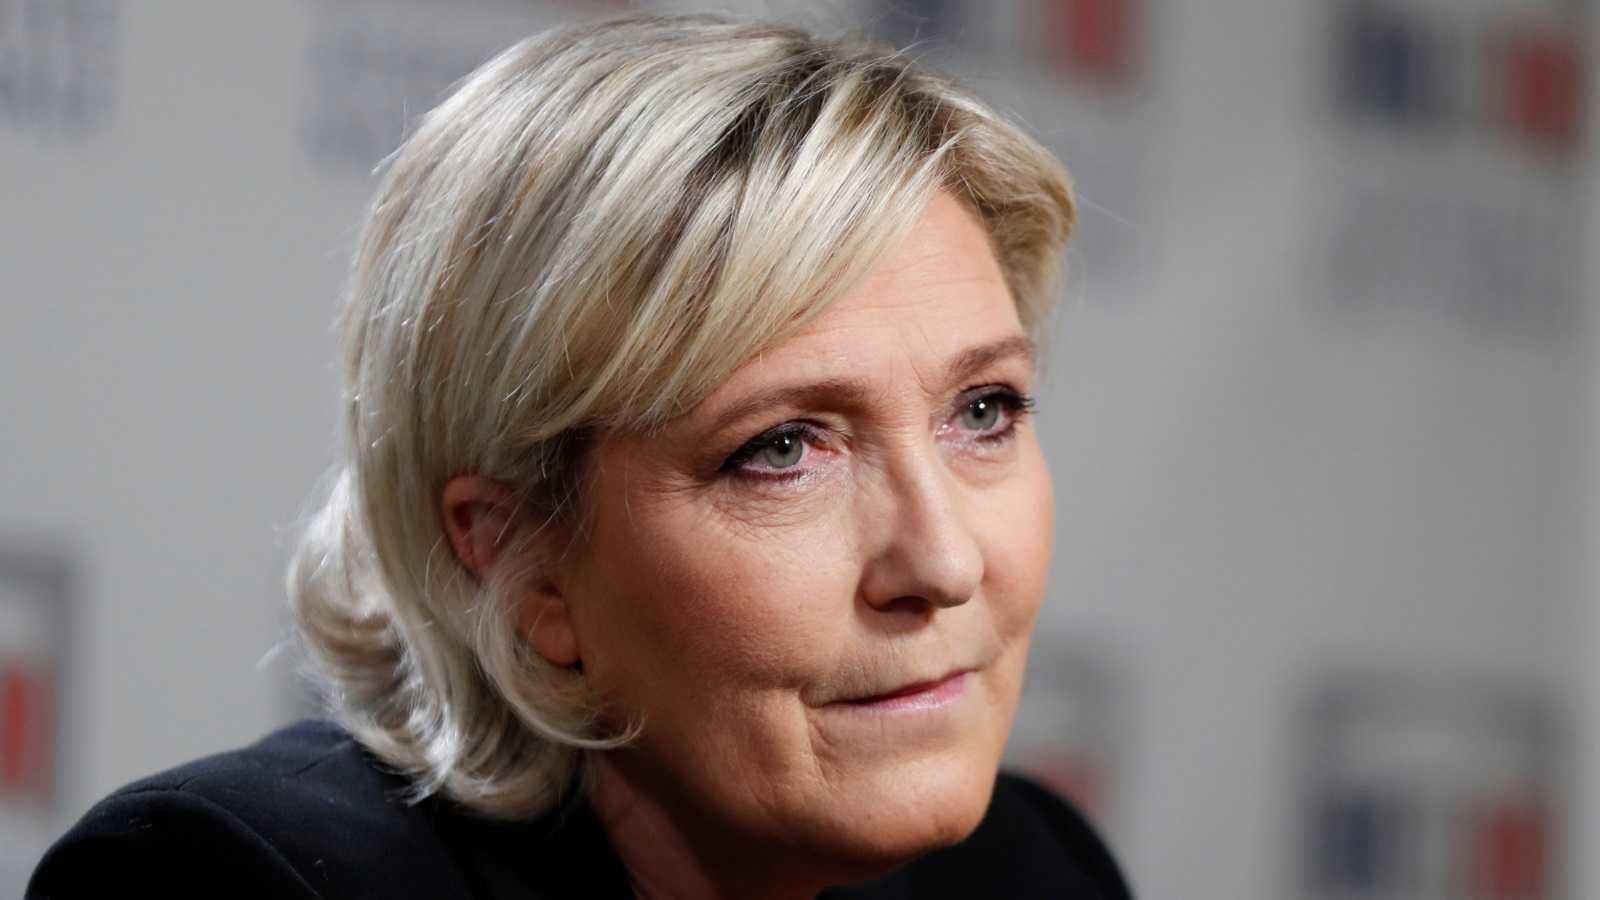 ماري لوبان رئيسة حزب الجبهة الوطنية (فرنسا) اليميني المتطرف  (رويترز)